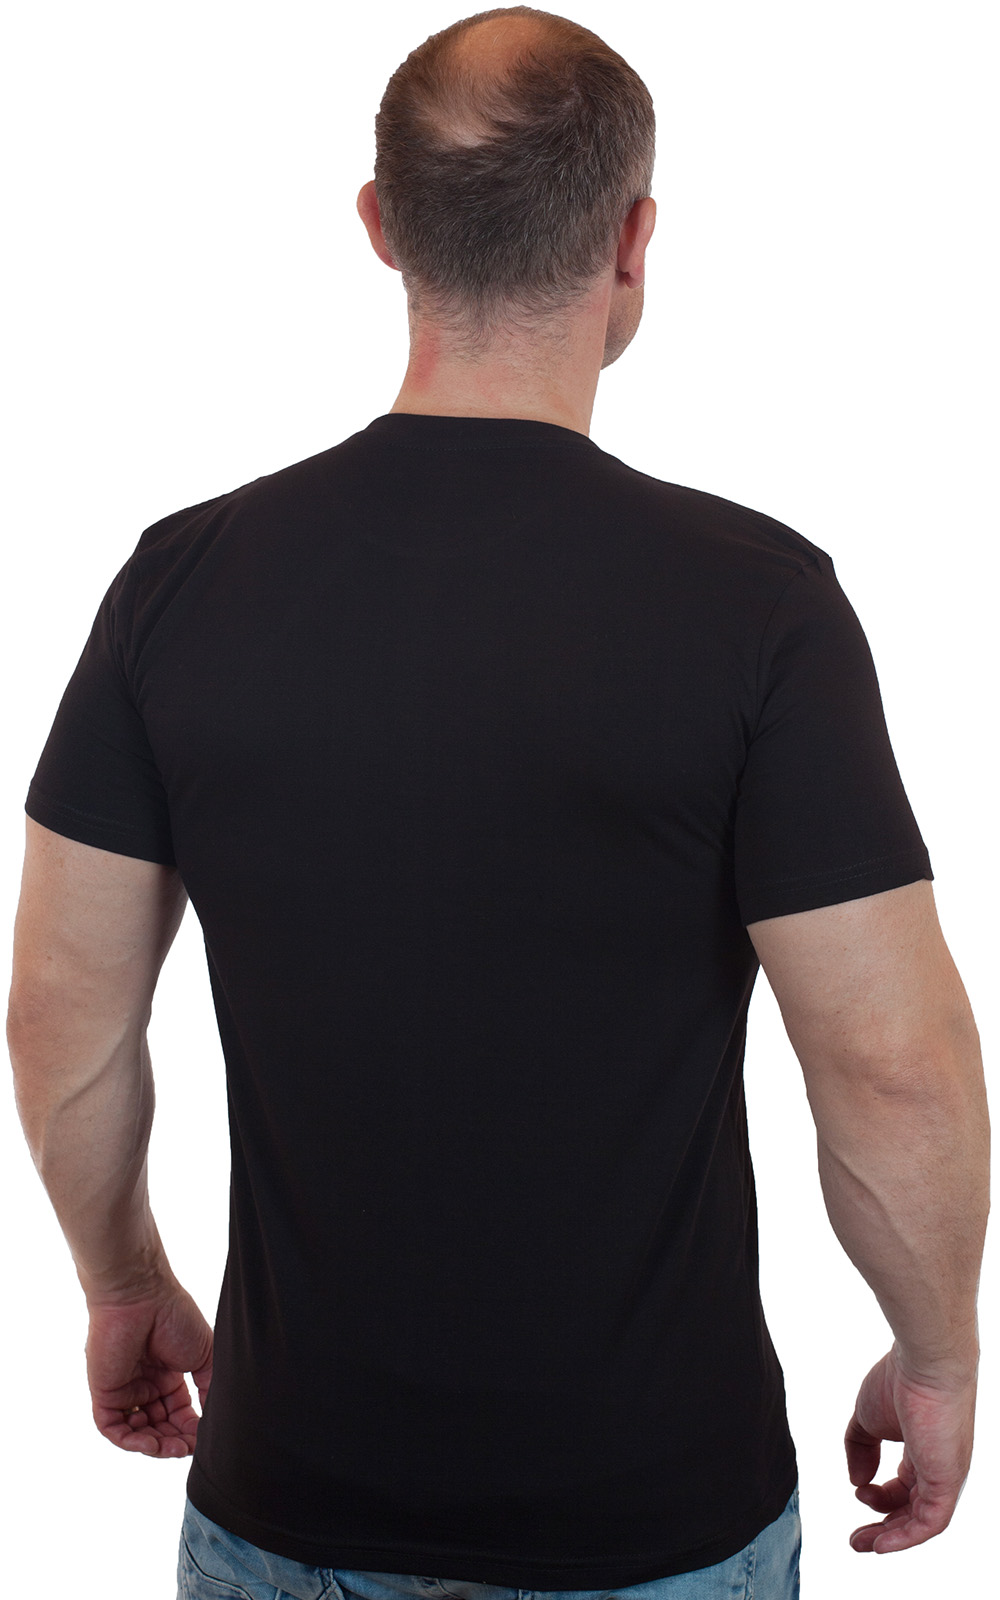 Купить лаконичную мужскую футболку Полиция оптом или в розницу